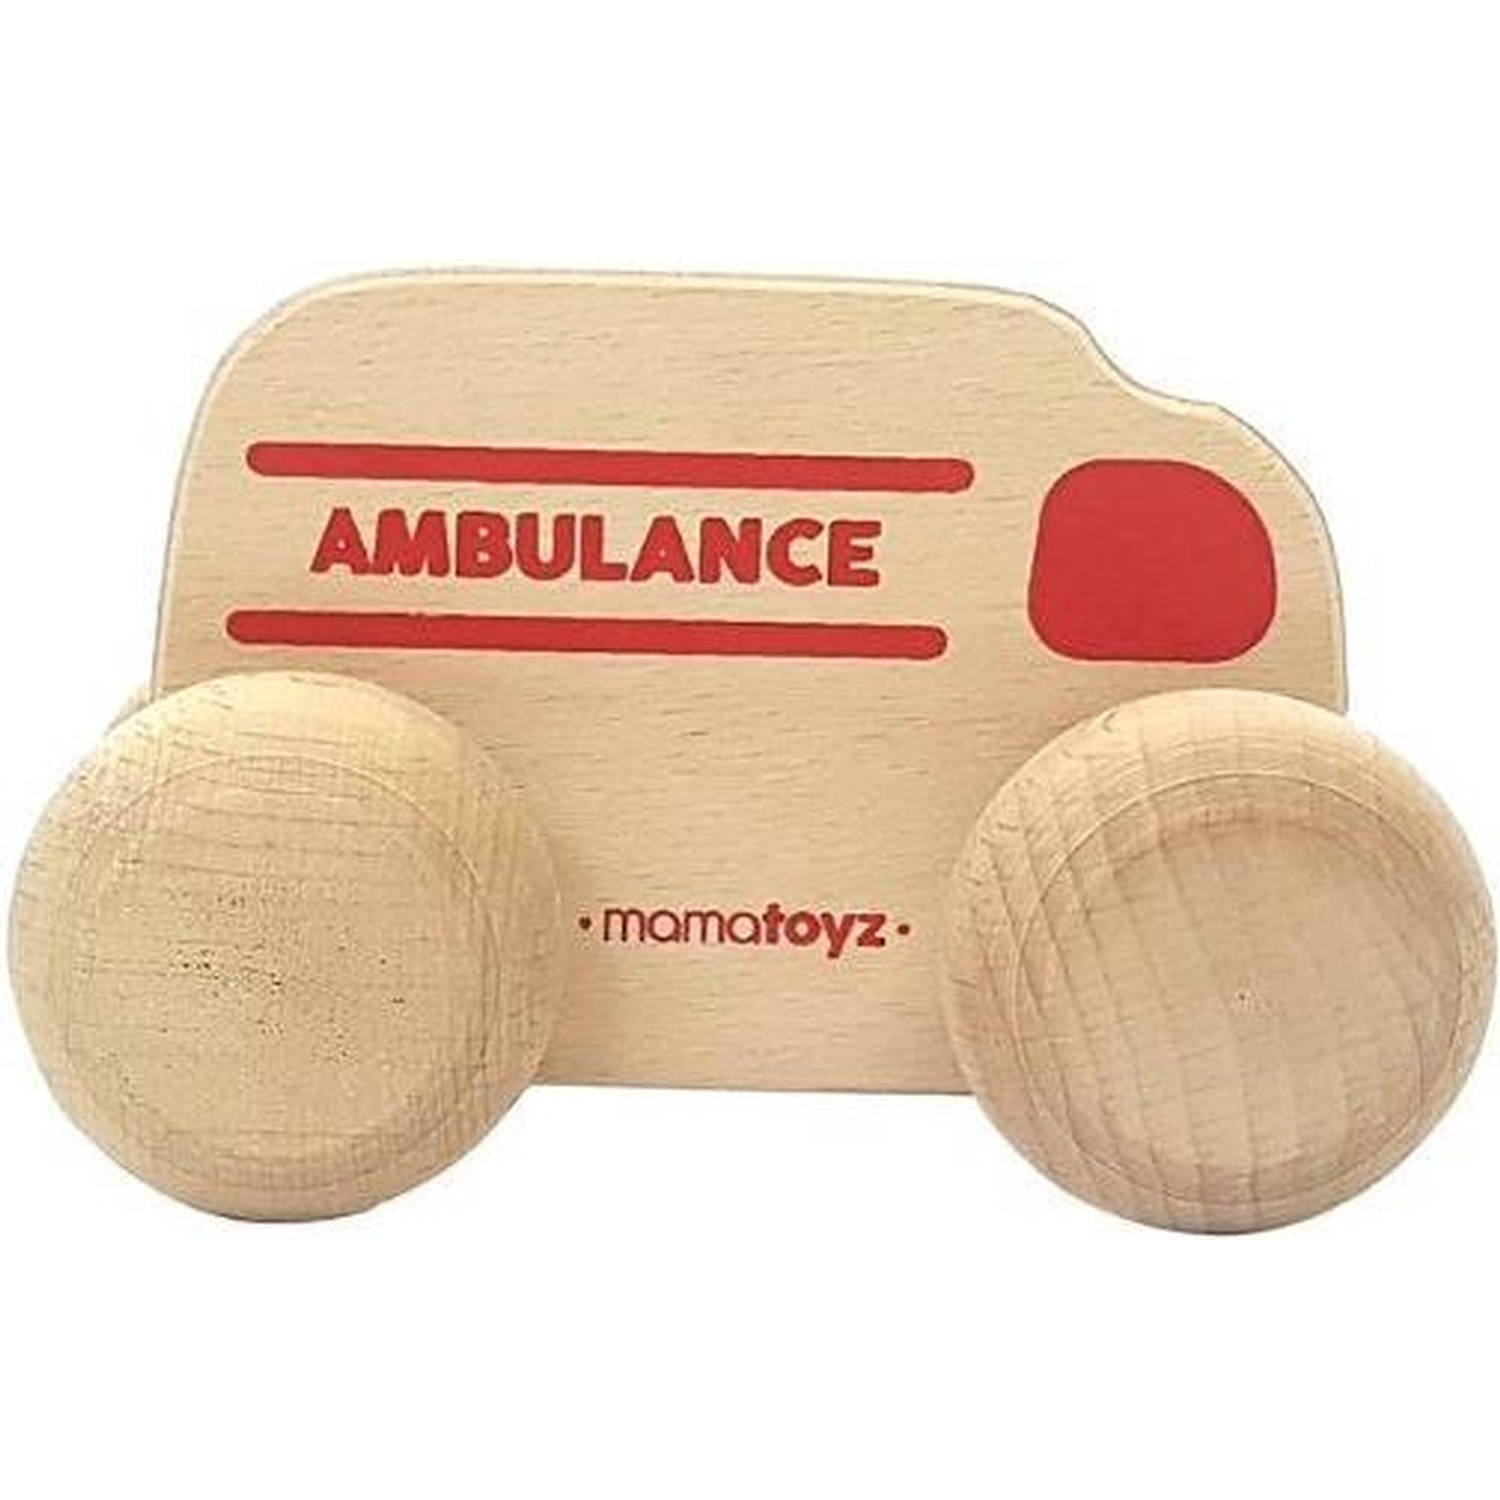 Mamatoyz ambulance 15 x 8 cm hout naturel